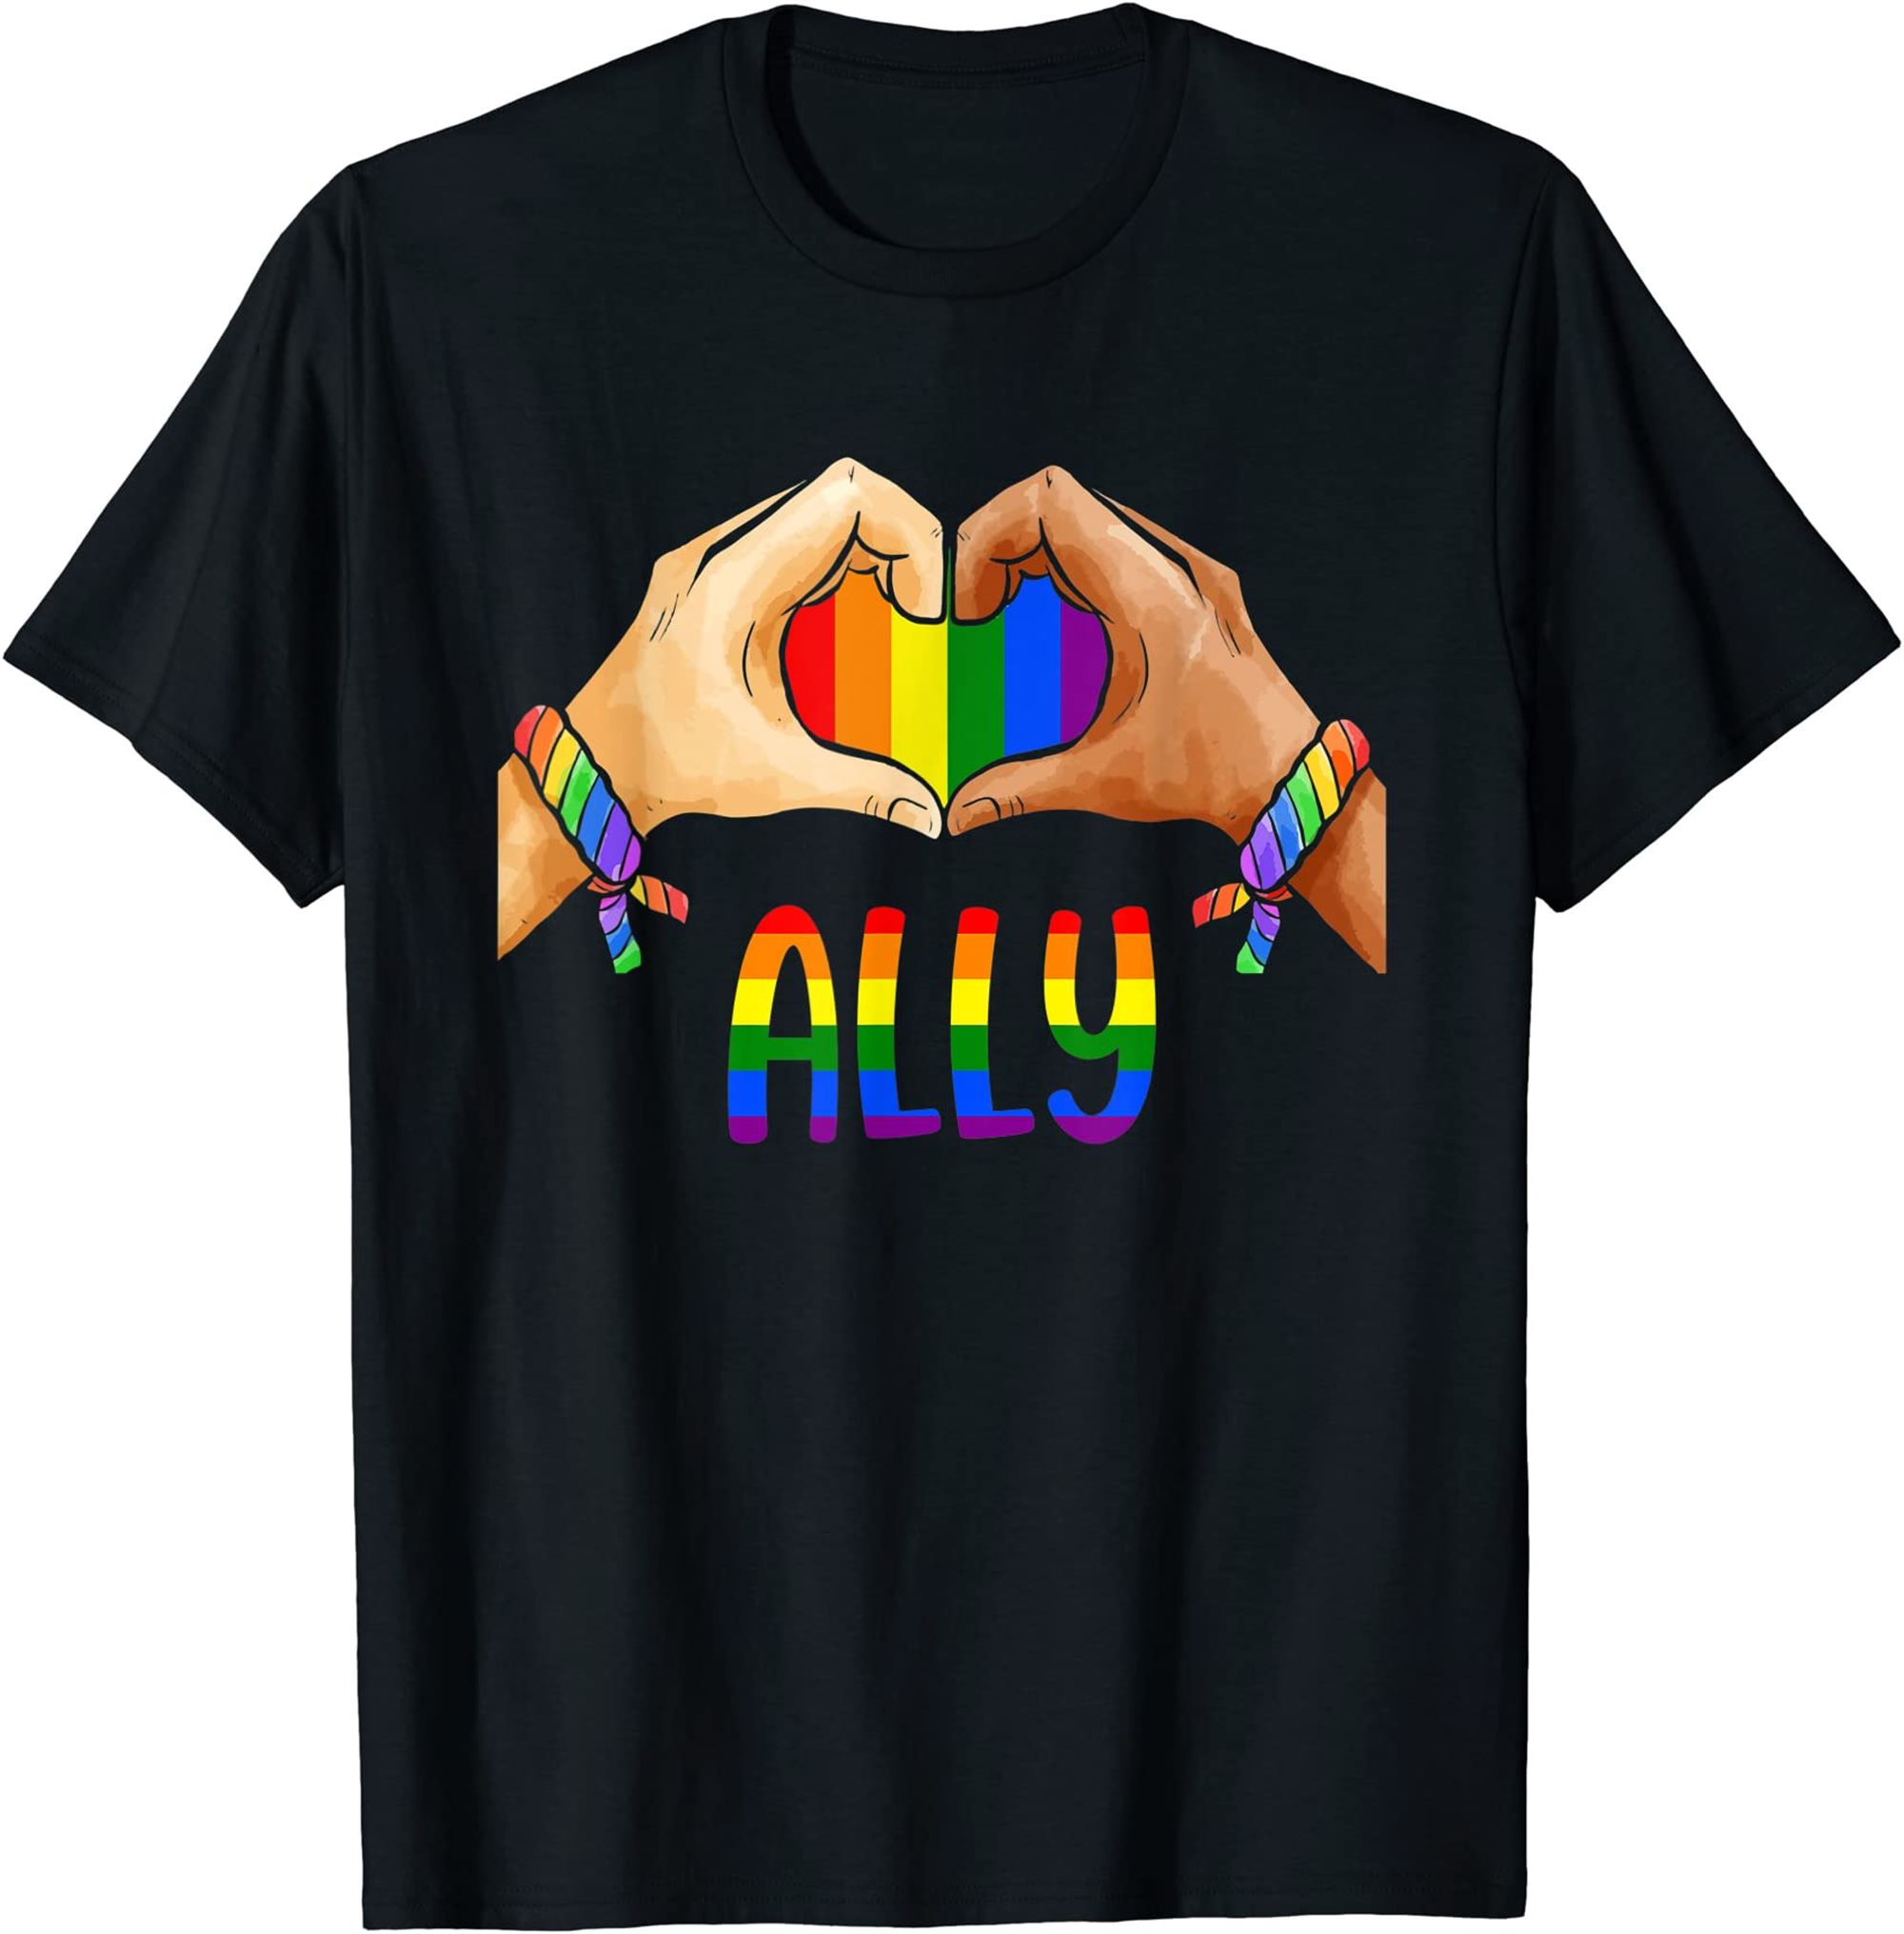 Lgbtq Ally Tshirt For Gay Pride Men Women Children Tshirt Plus Size Up To 5xl